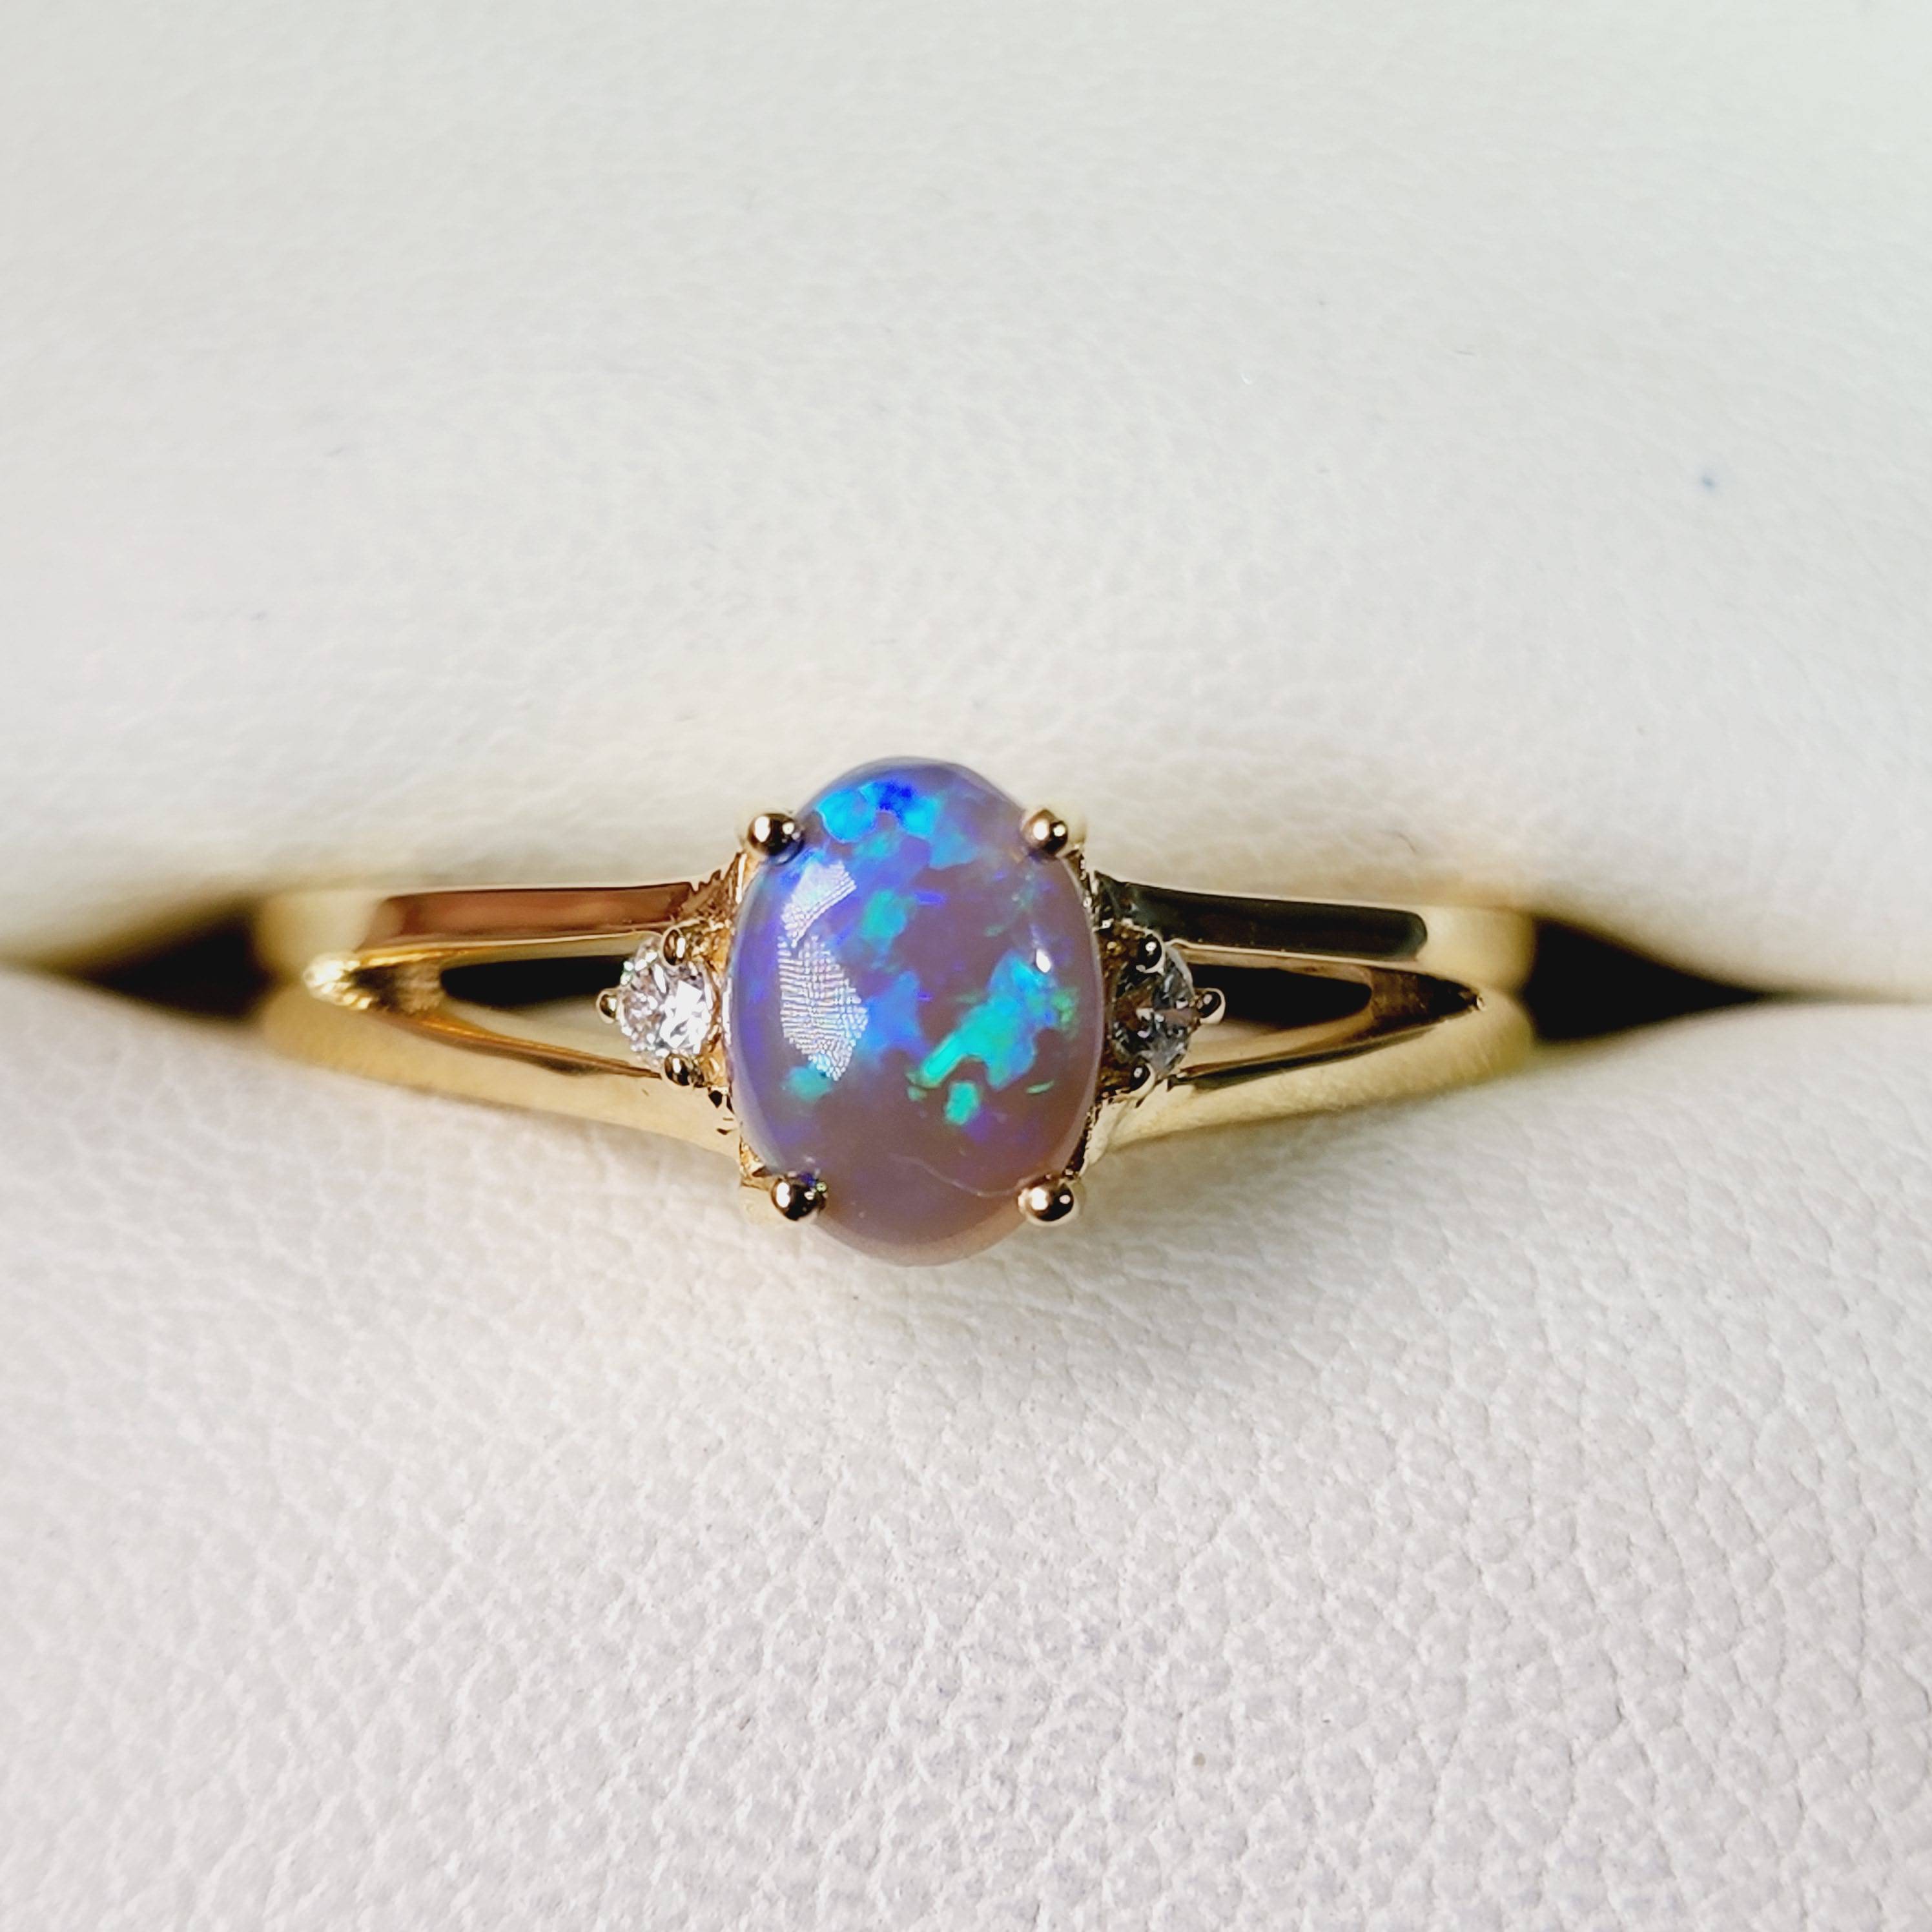 Products - Australian Opal Jewellery Online Store